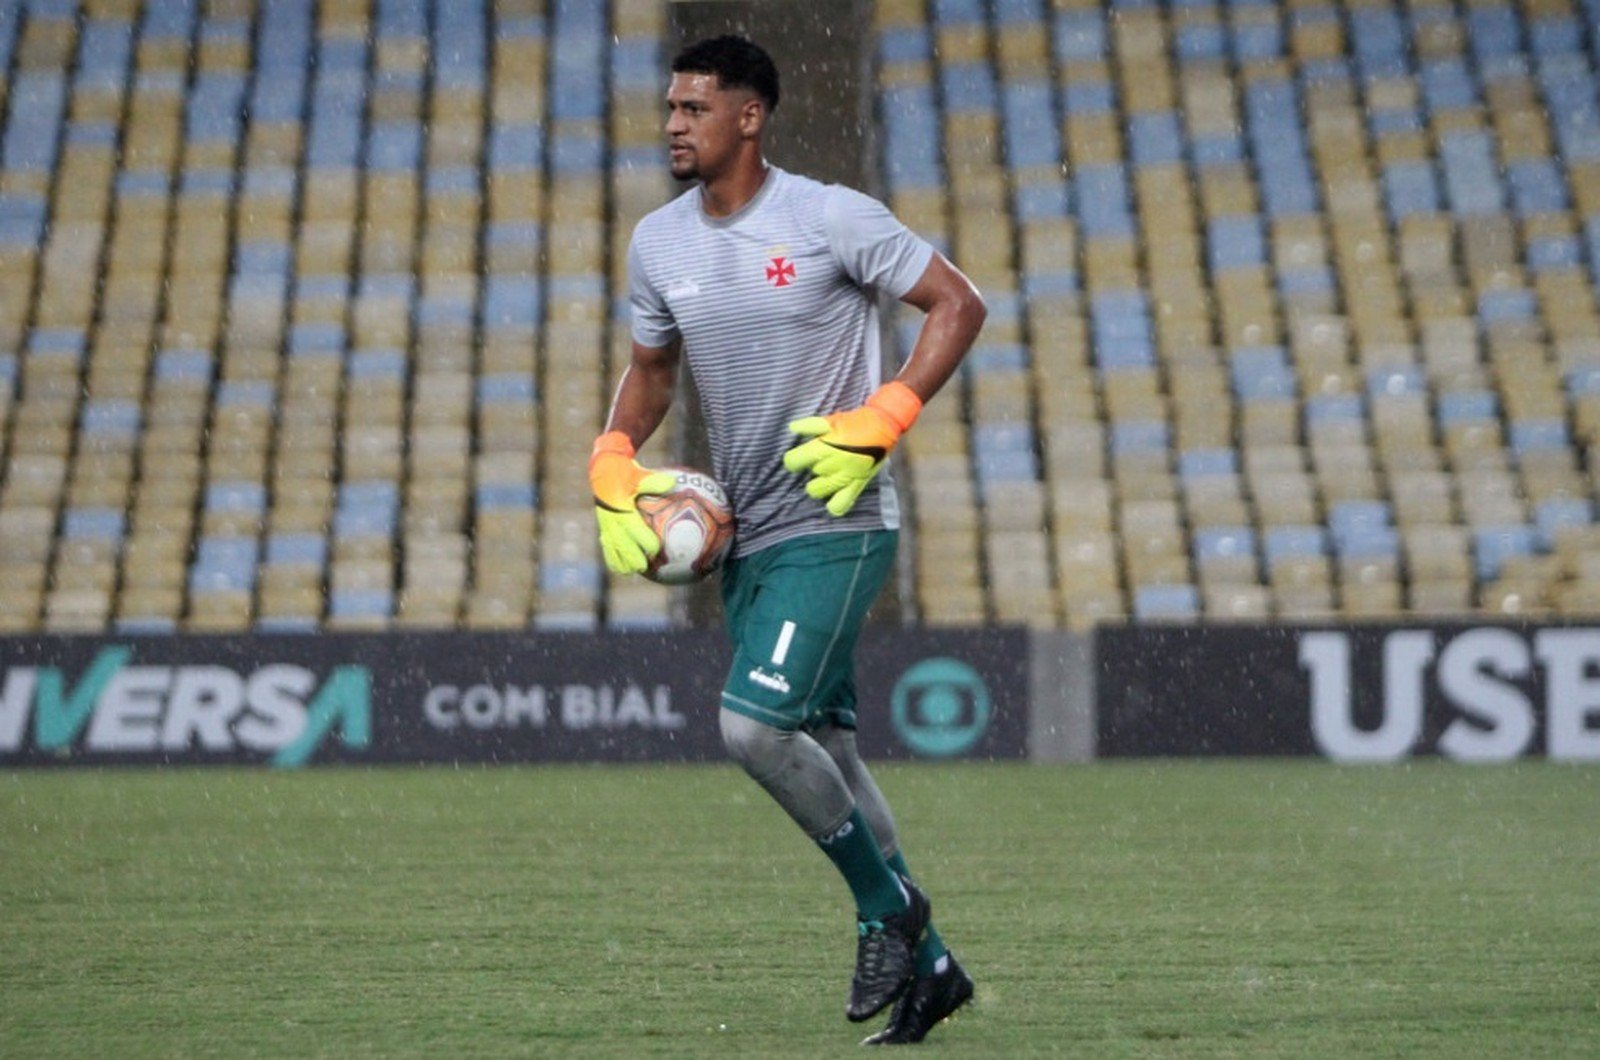 Alexander - Revelado pelo Gigante da Colina, foi um dos principais destaques do time da Copinha, que chegou à final em 2019. Desde que subiu ao time profissional, não recebeu muitas oportunidades.